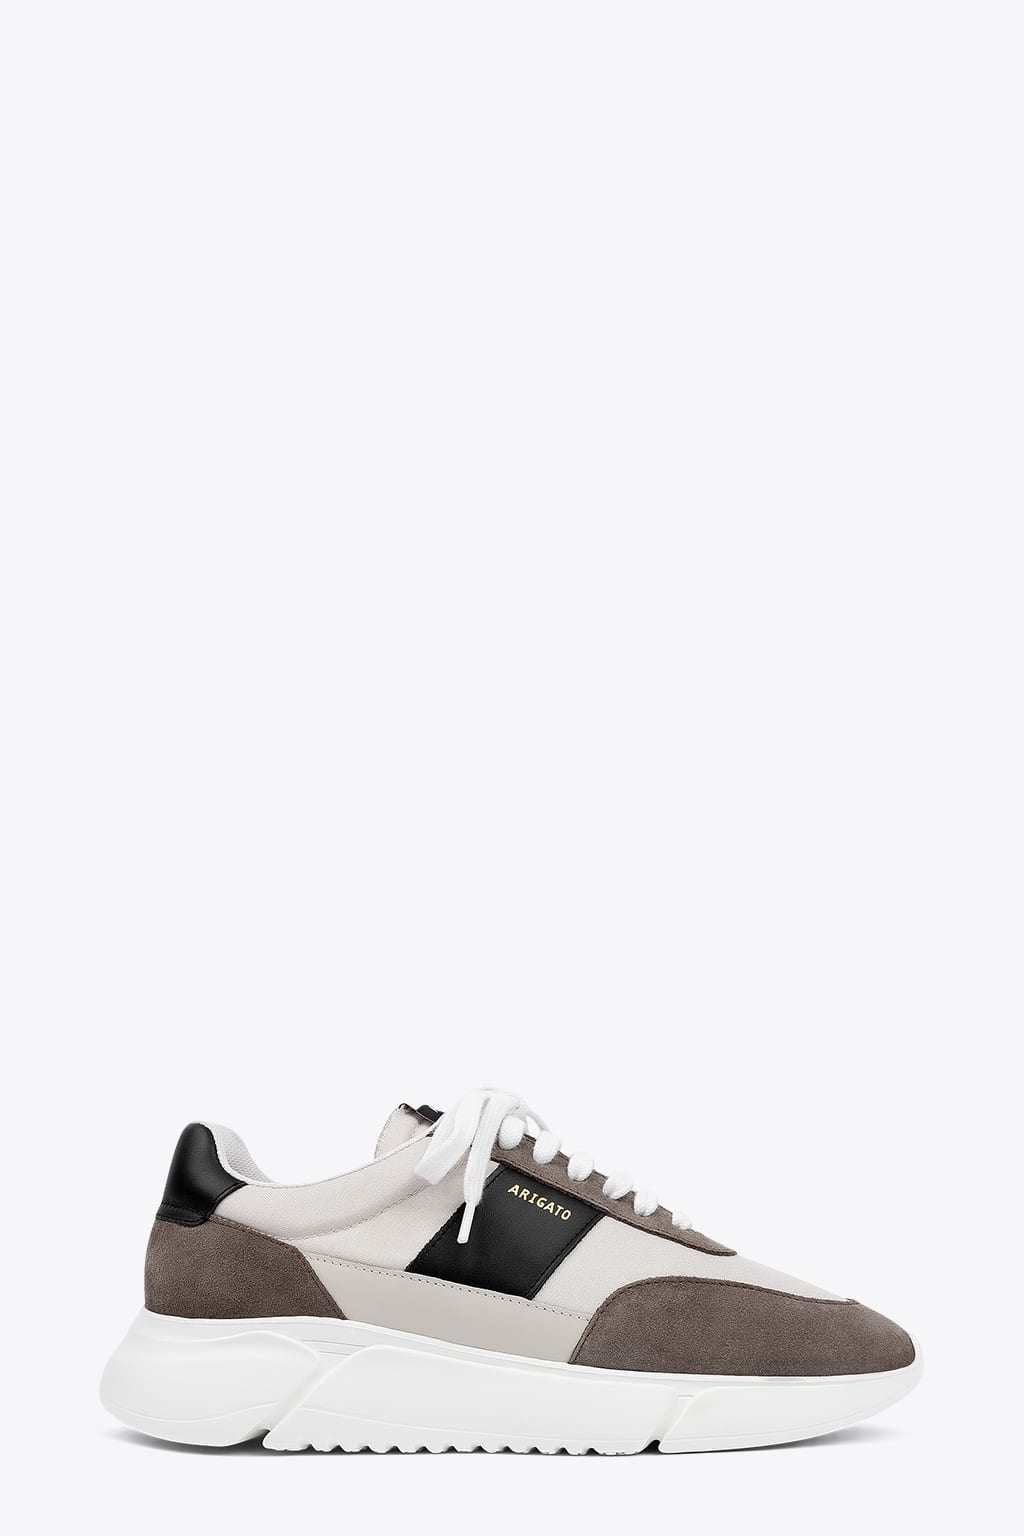 Axel Arigato Genesis Vintage Runner Beige and grey low sneaker - Genesis vintage runner